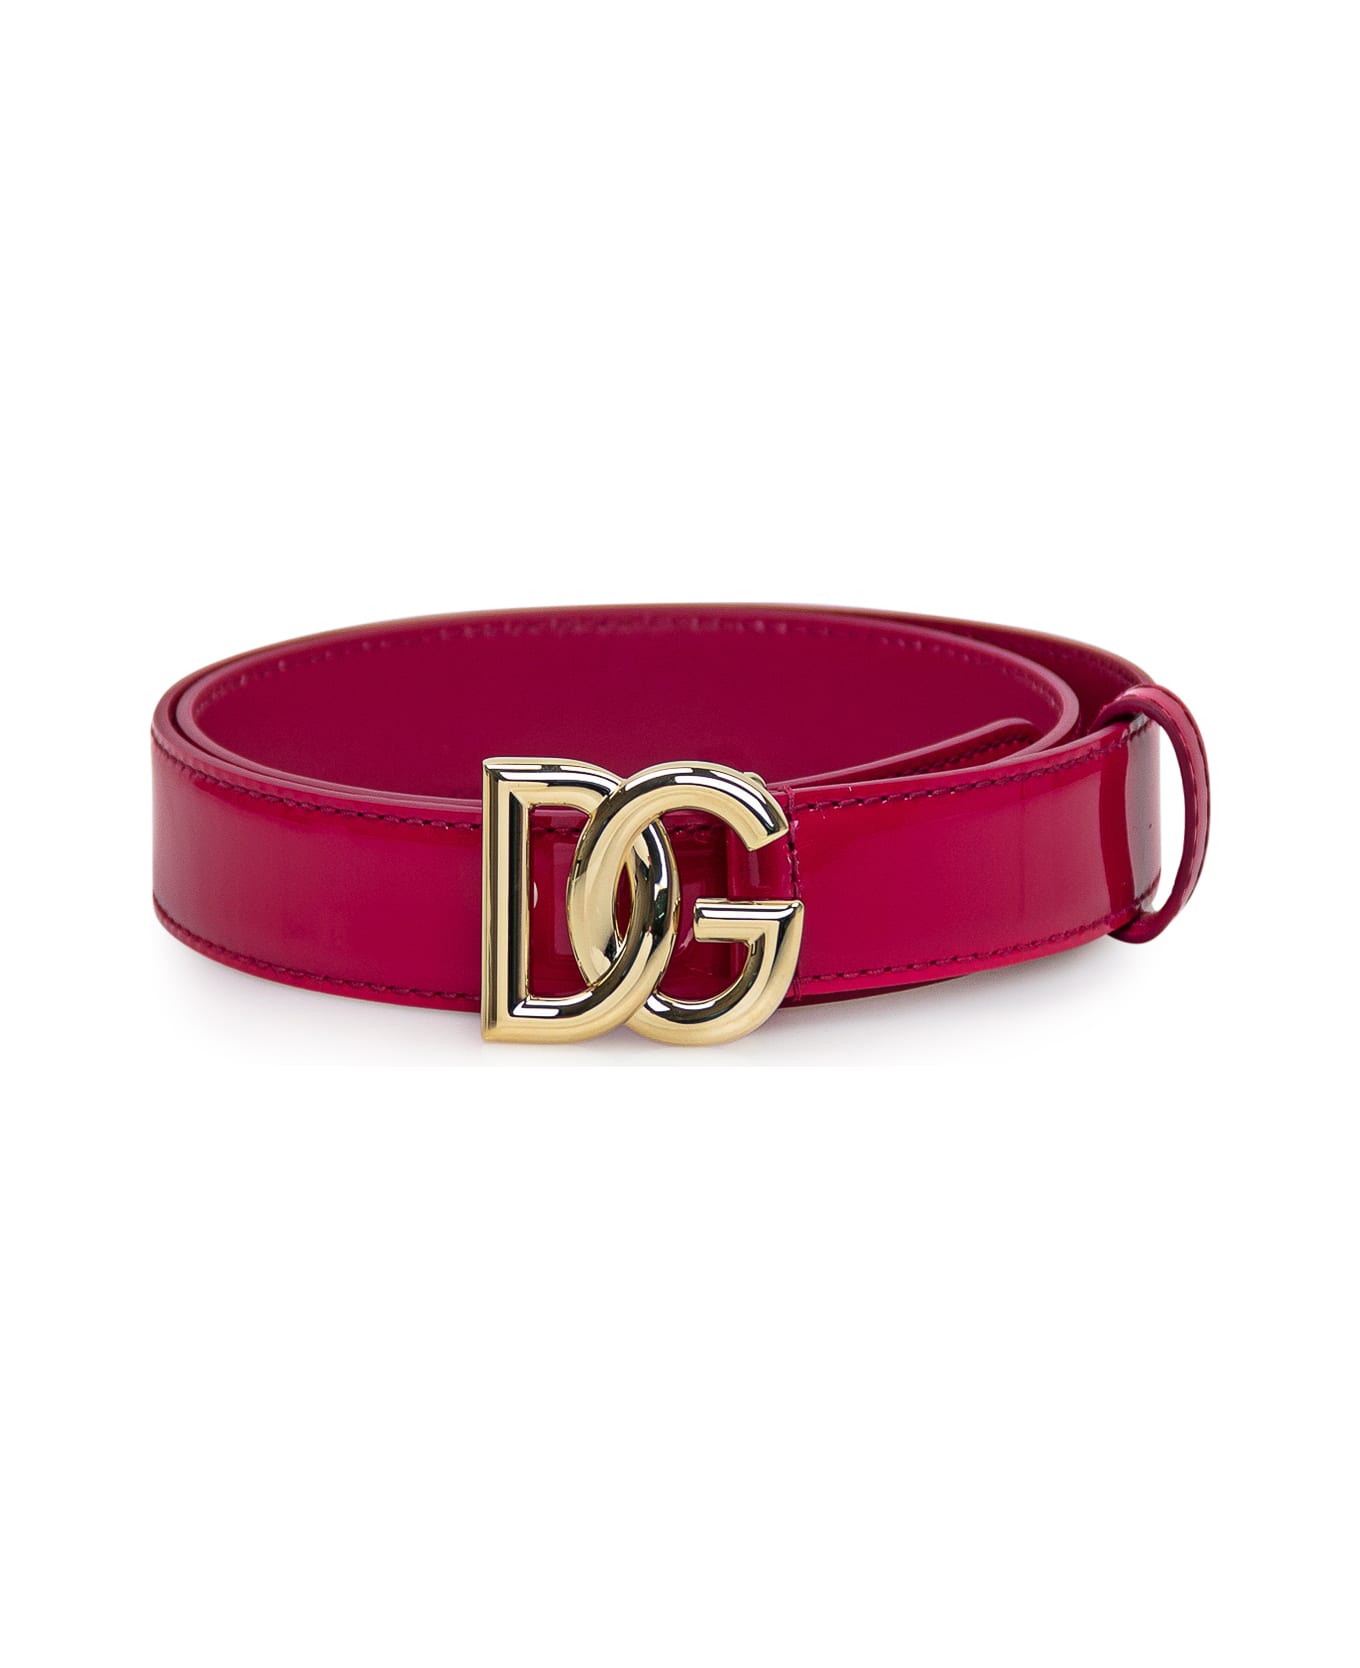 Dolce & Gabbana Belt With Logo Buckle - Fuchsia